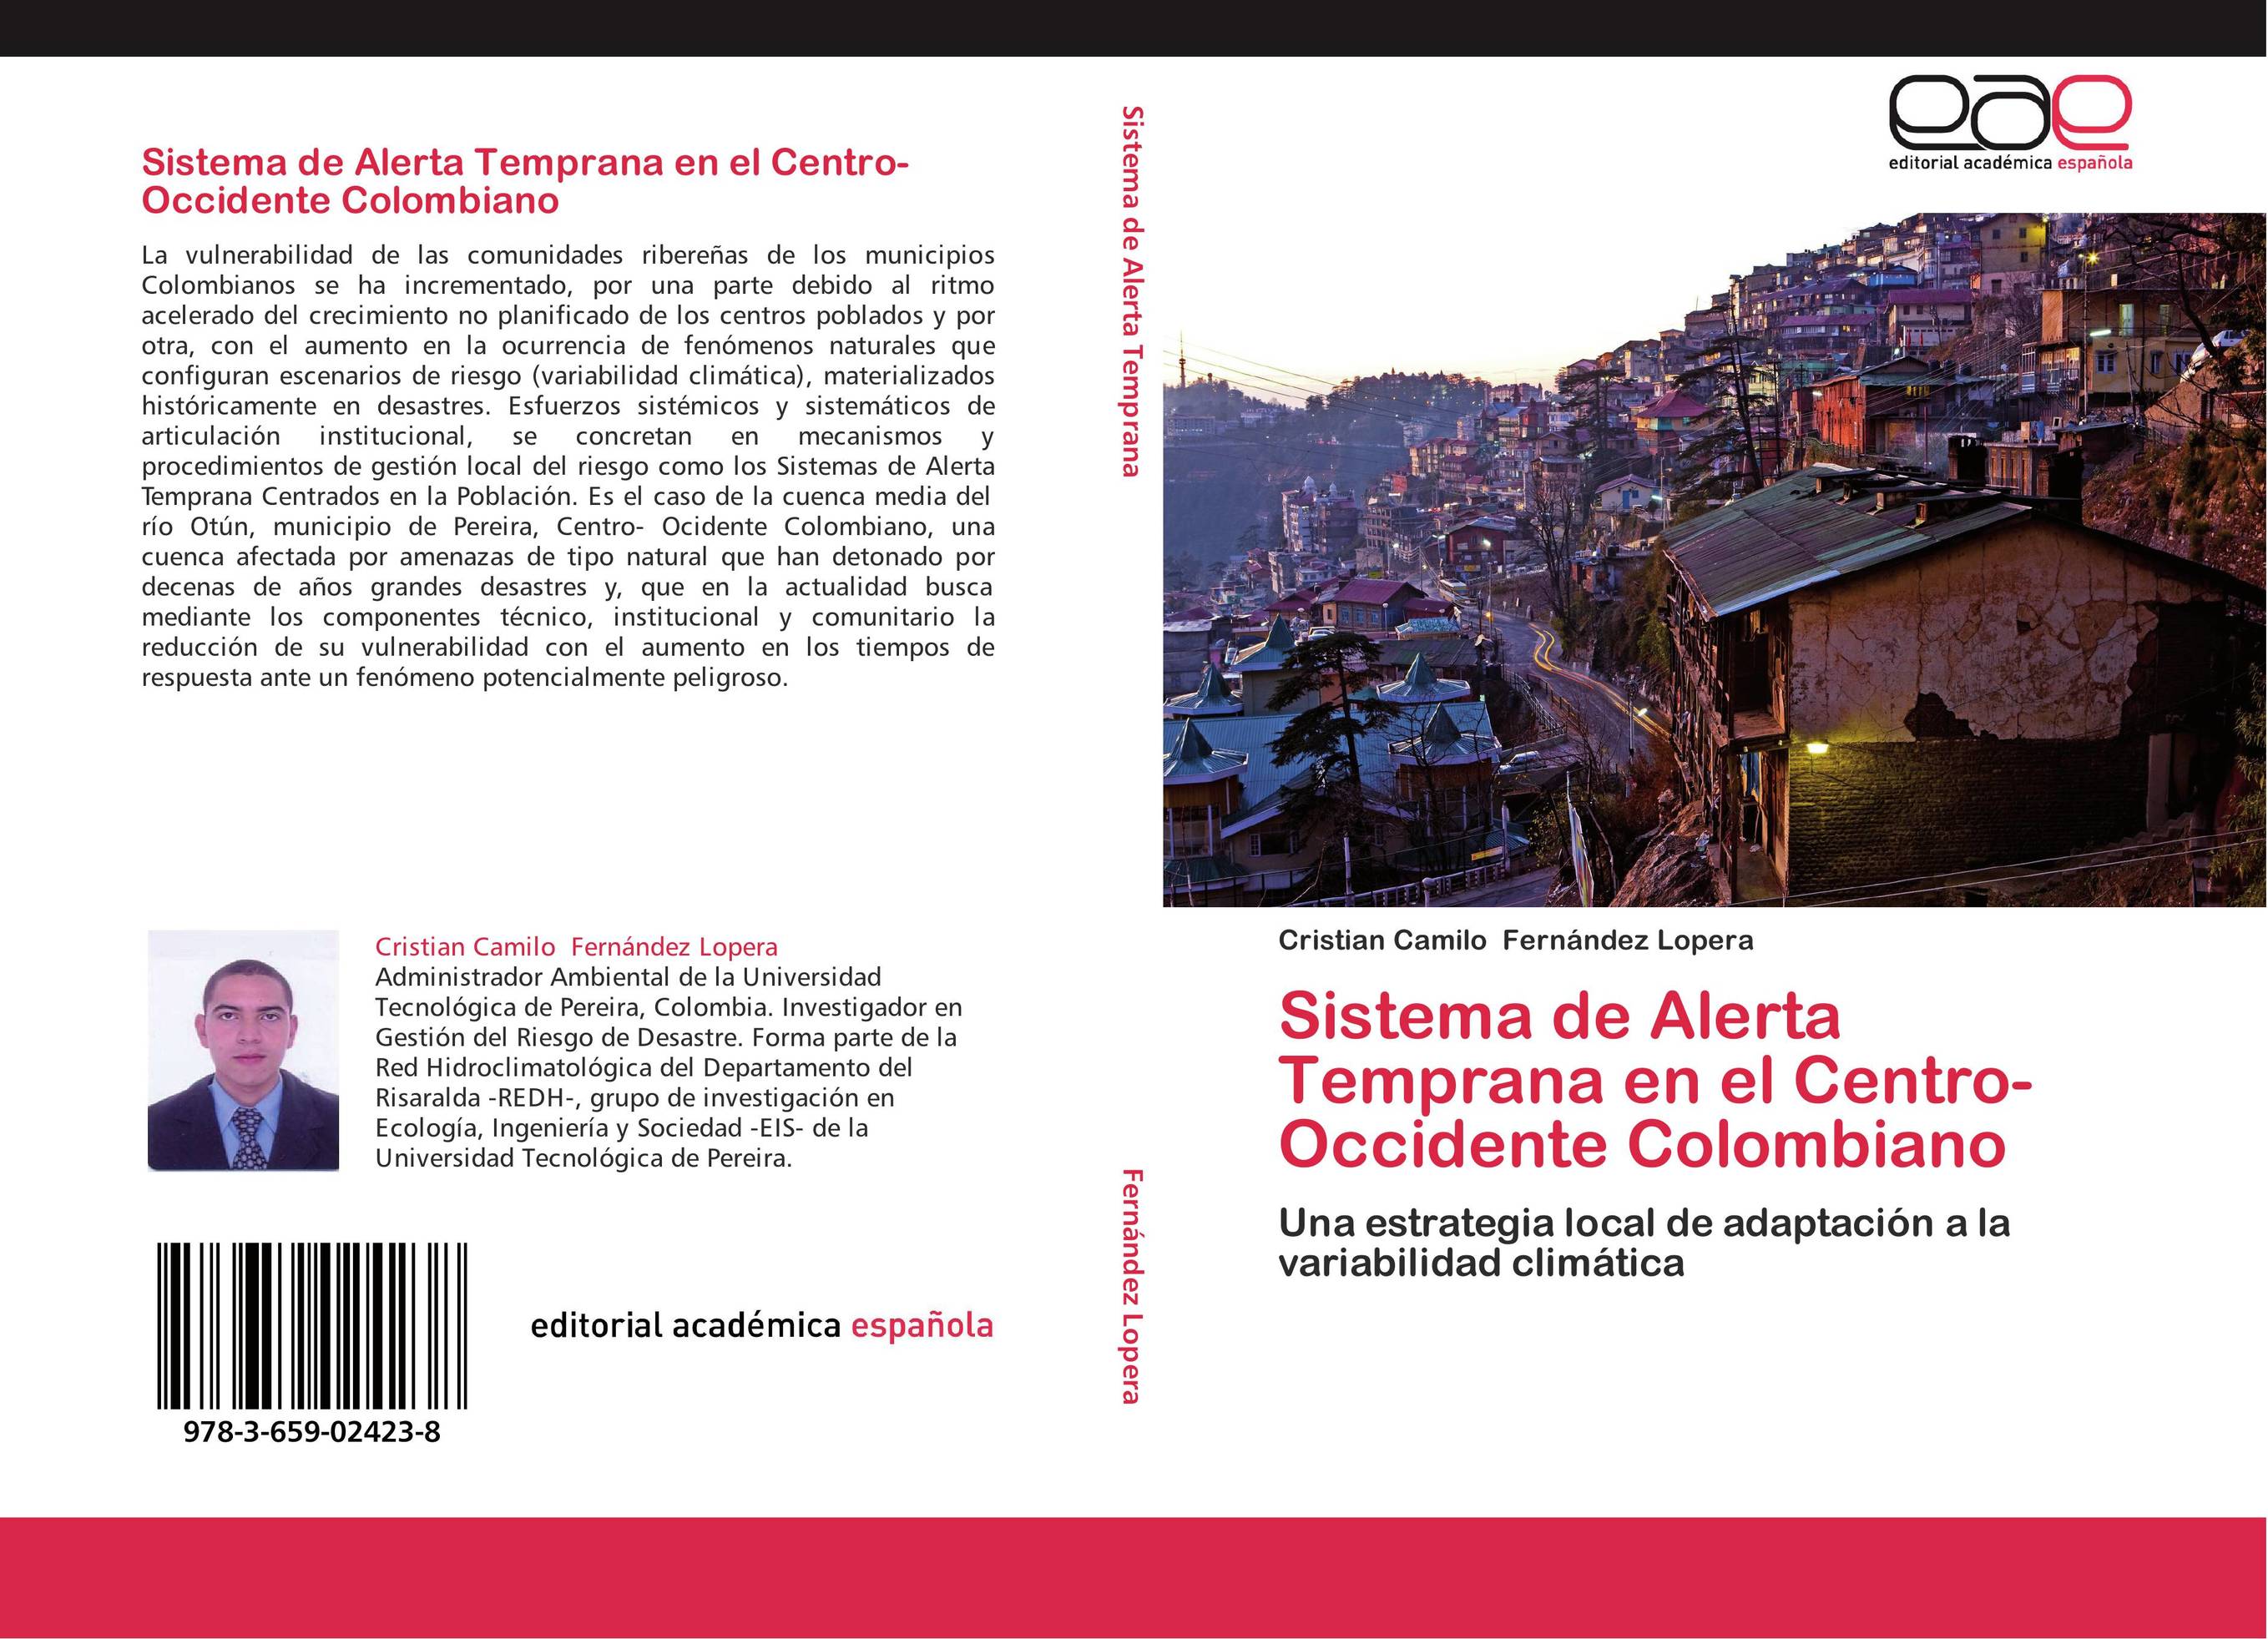 Sistema de Alerta Temprana en el Centro-Occidente Colombiano